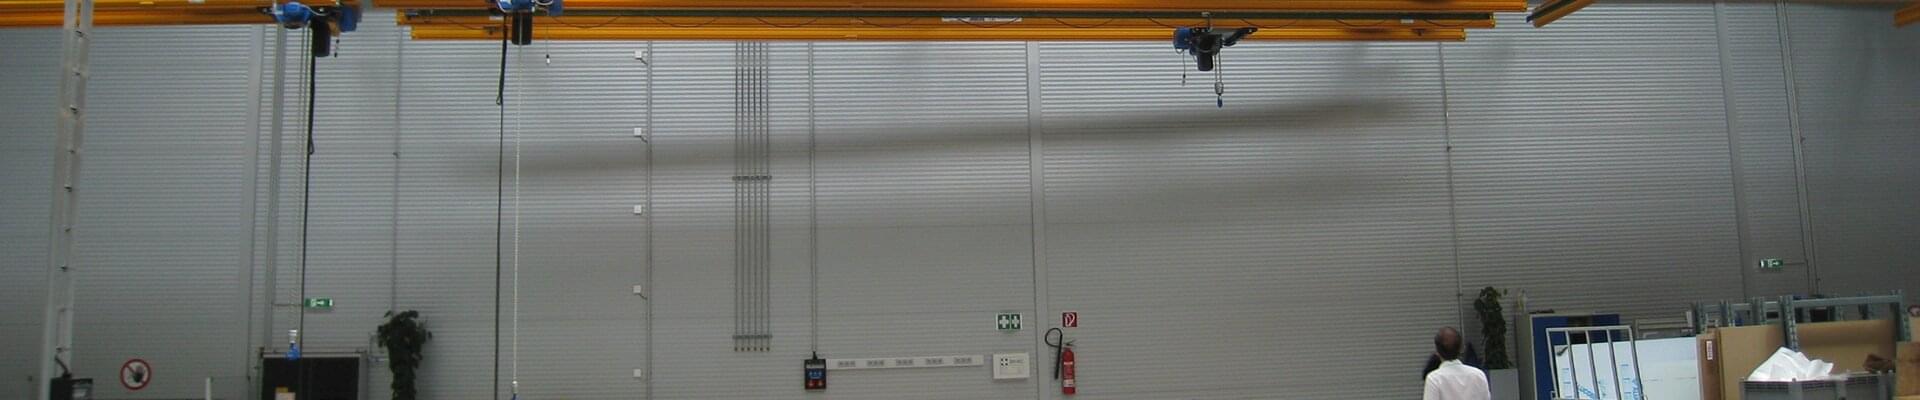 Installation de convoyeurs suspendus d'ABUS dans le hall de production de profilés en aluminium et de matériaux composites en Autriche 